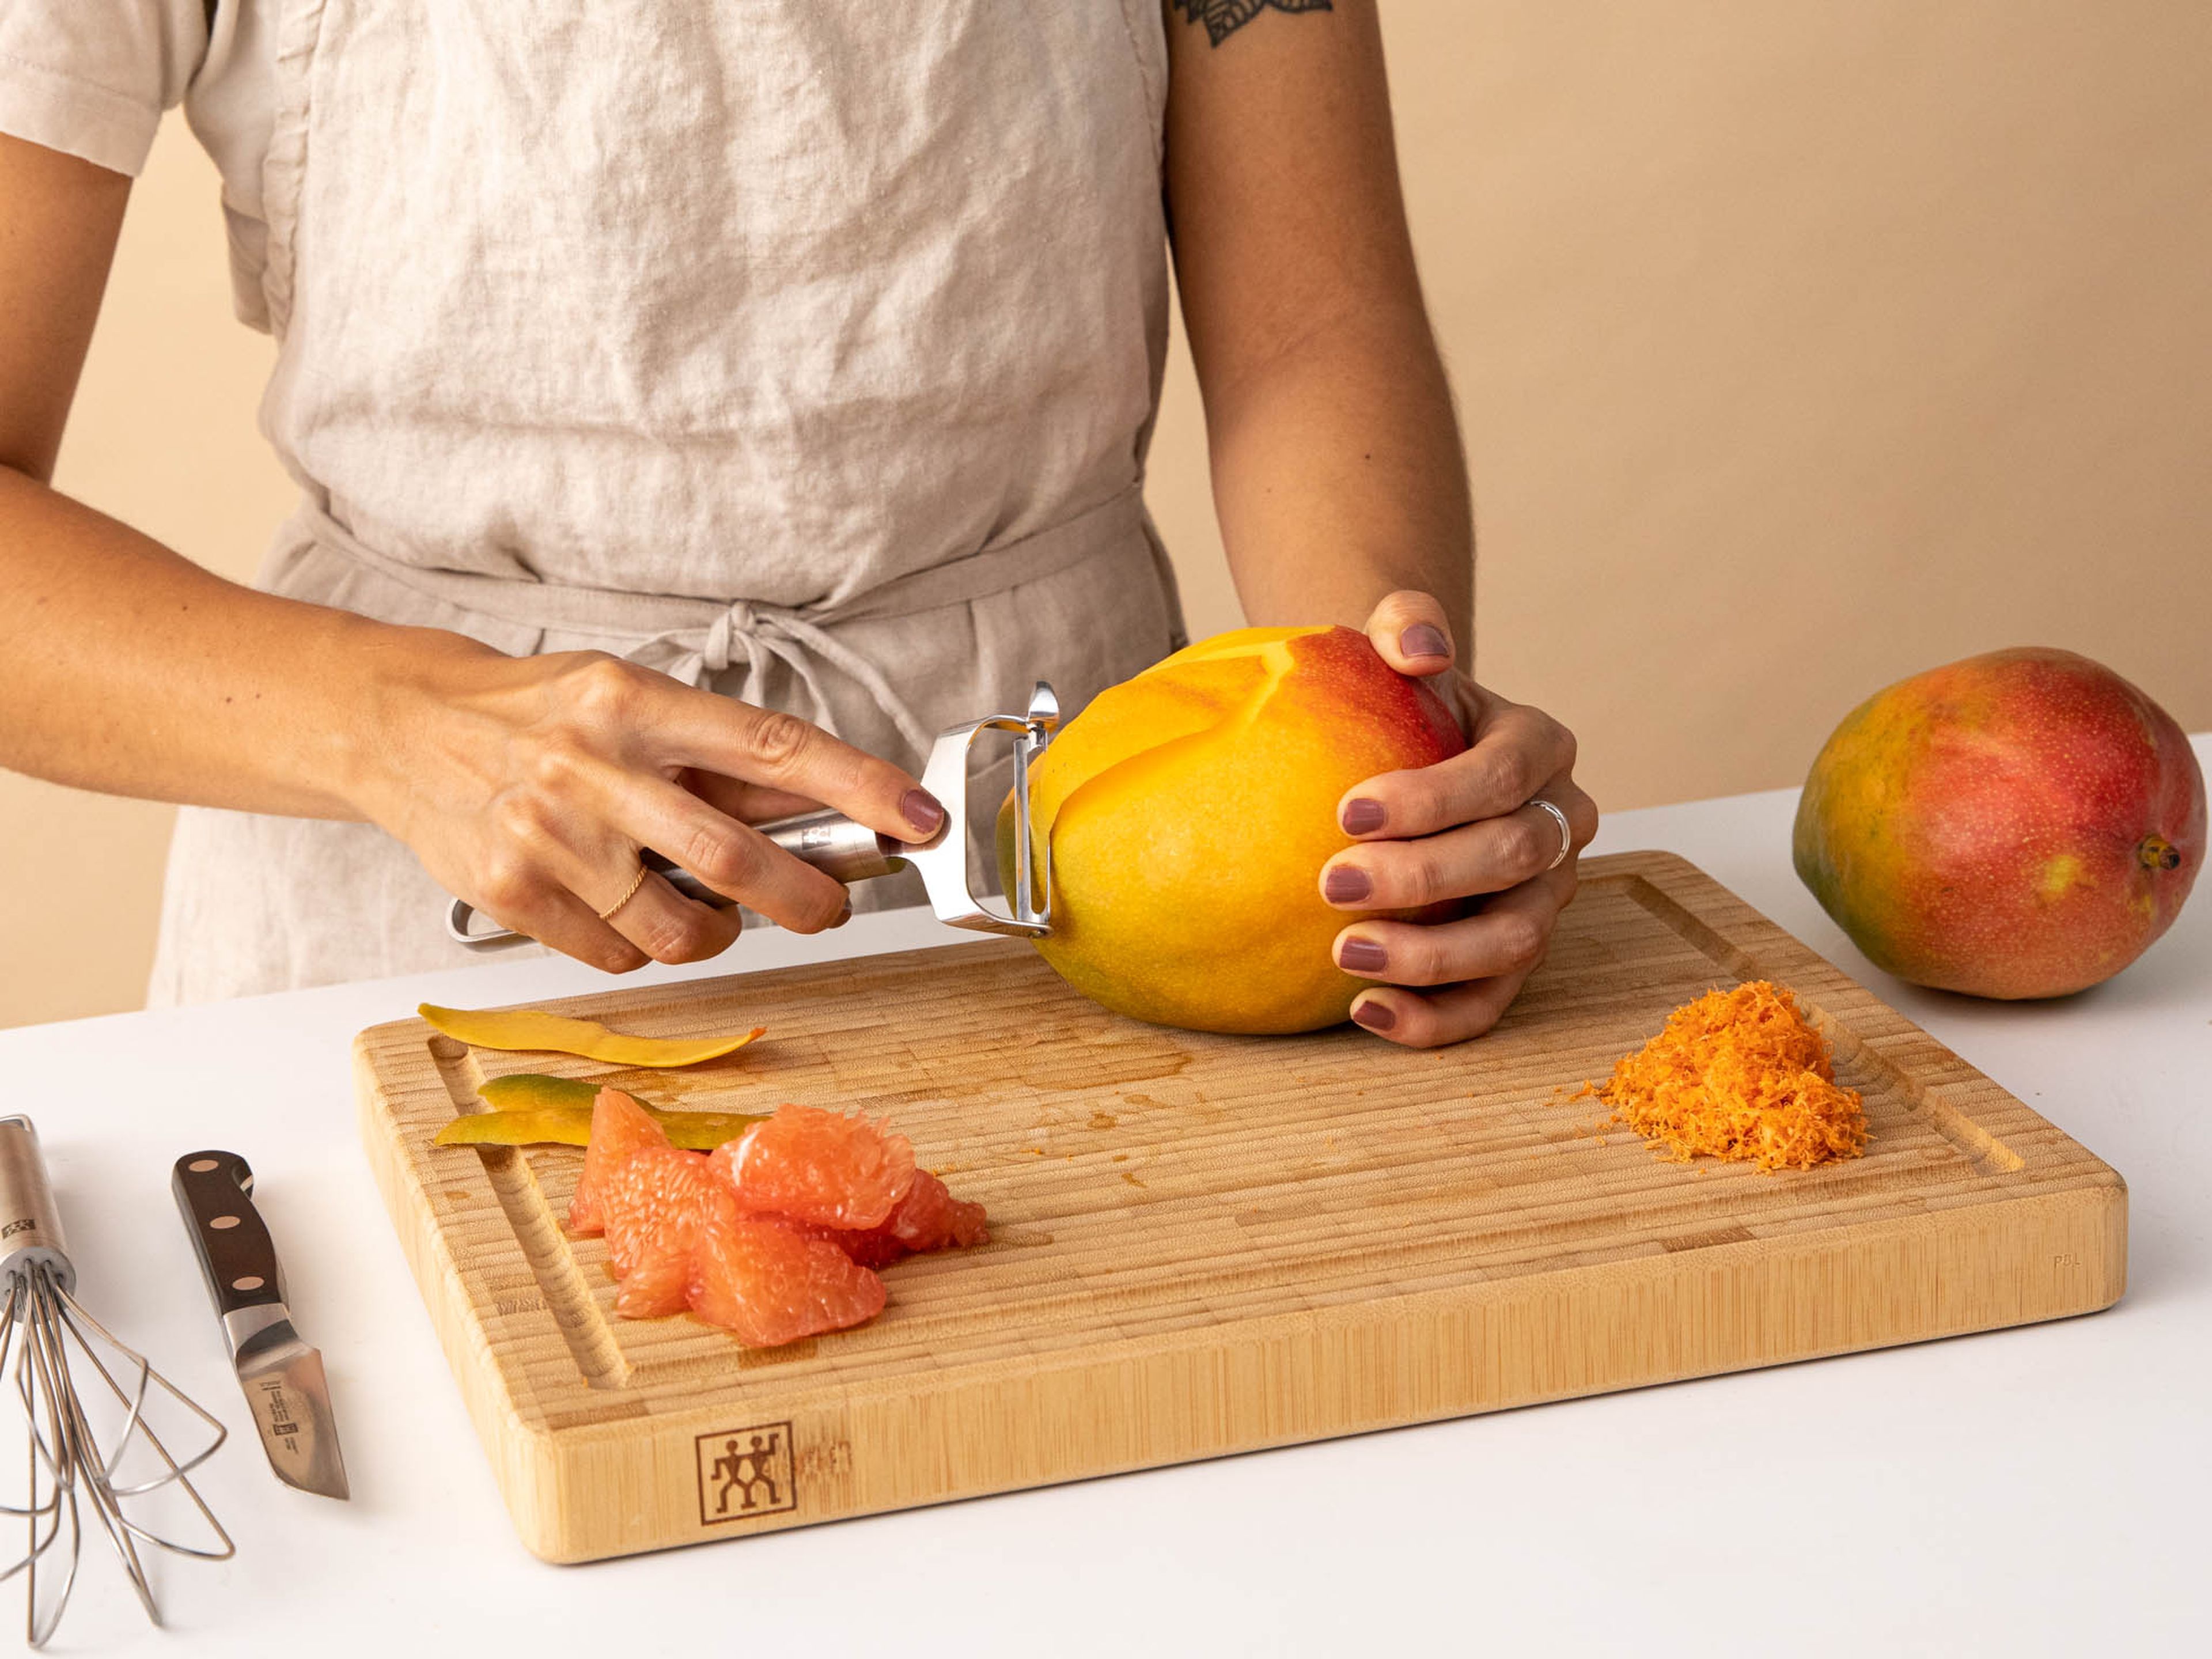 Mango schälen und zwei große Hälften abschneiden. In dünne Scheiben schneiden und auf einen Servierteller geben und mit gekühltem Grapefruitsirup übergießen. Mit übriger Grapefruitschale und restlichem Grapefruitsaft garnieren. Kalt genießen! Guten Appetit!